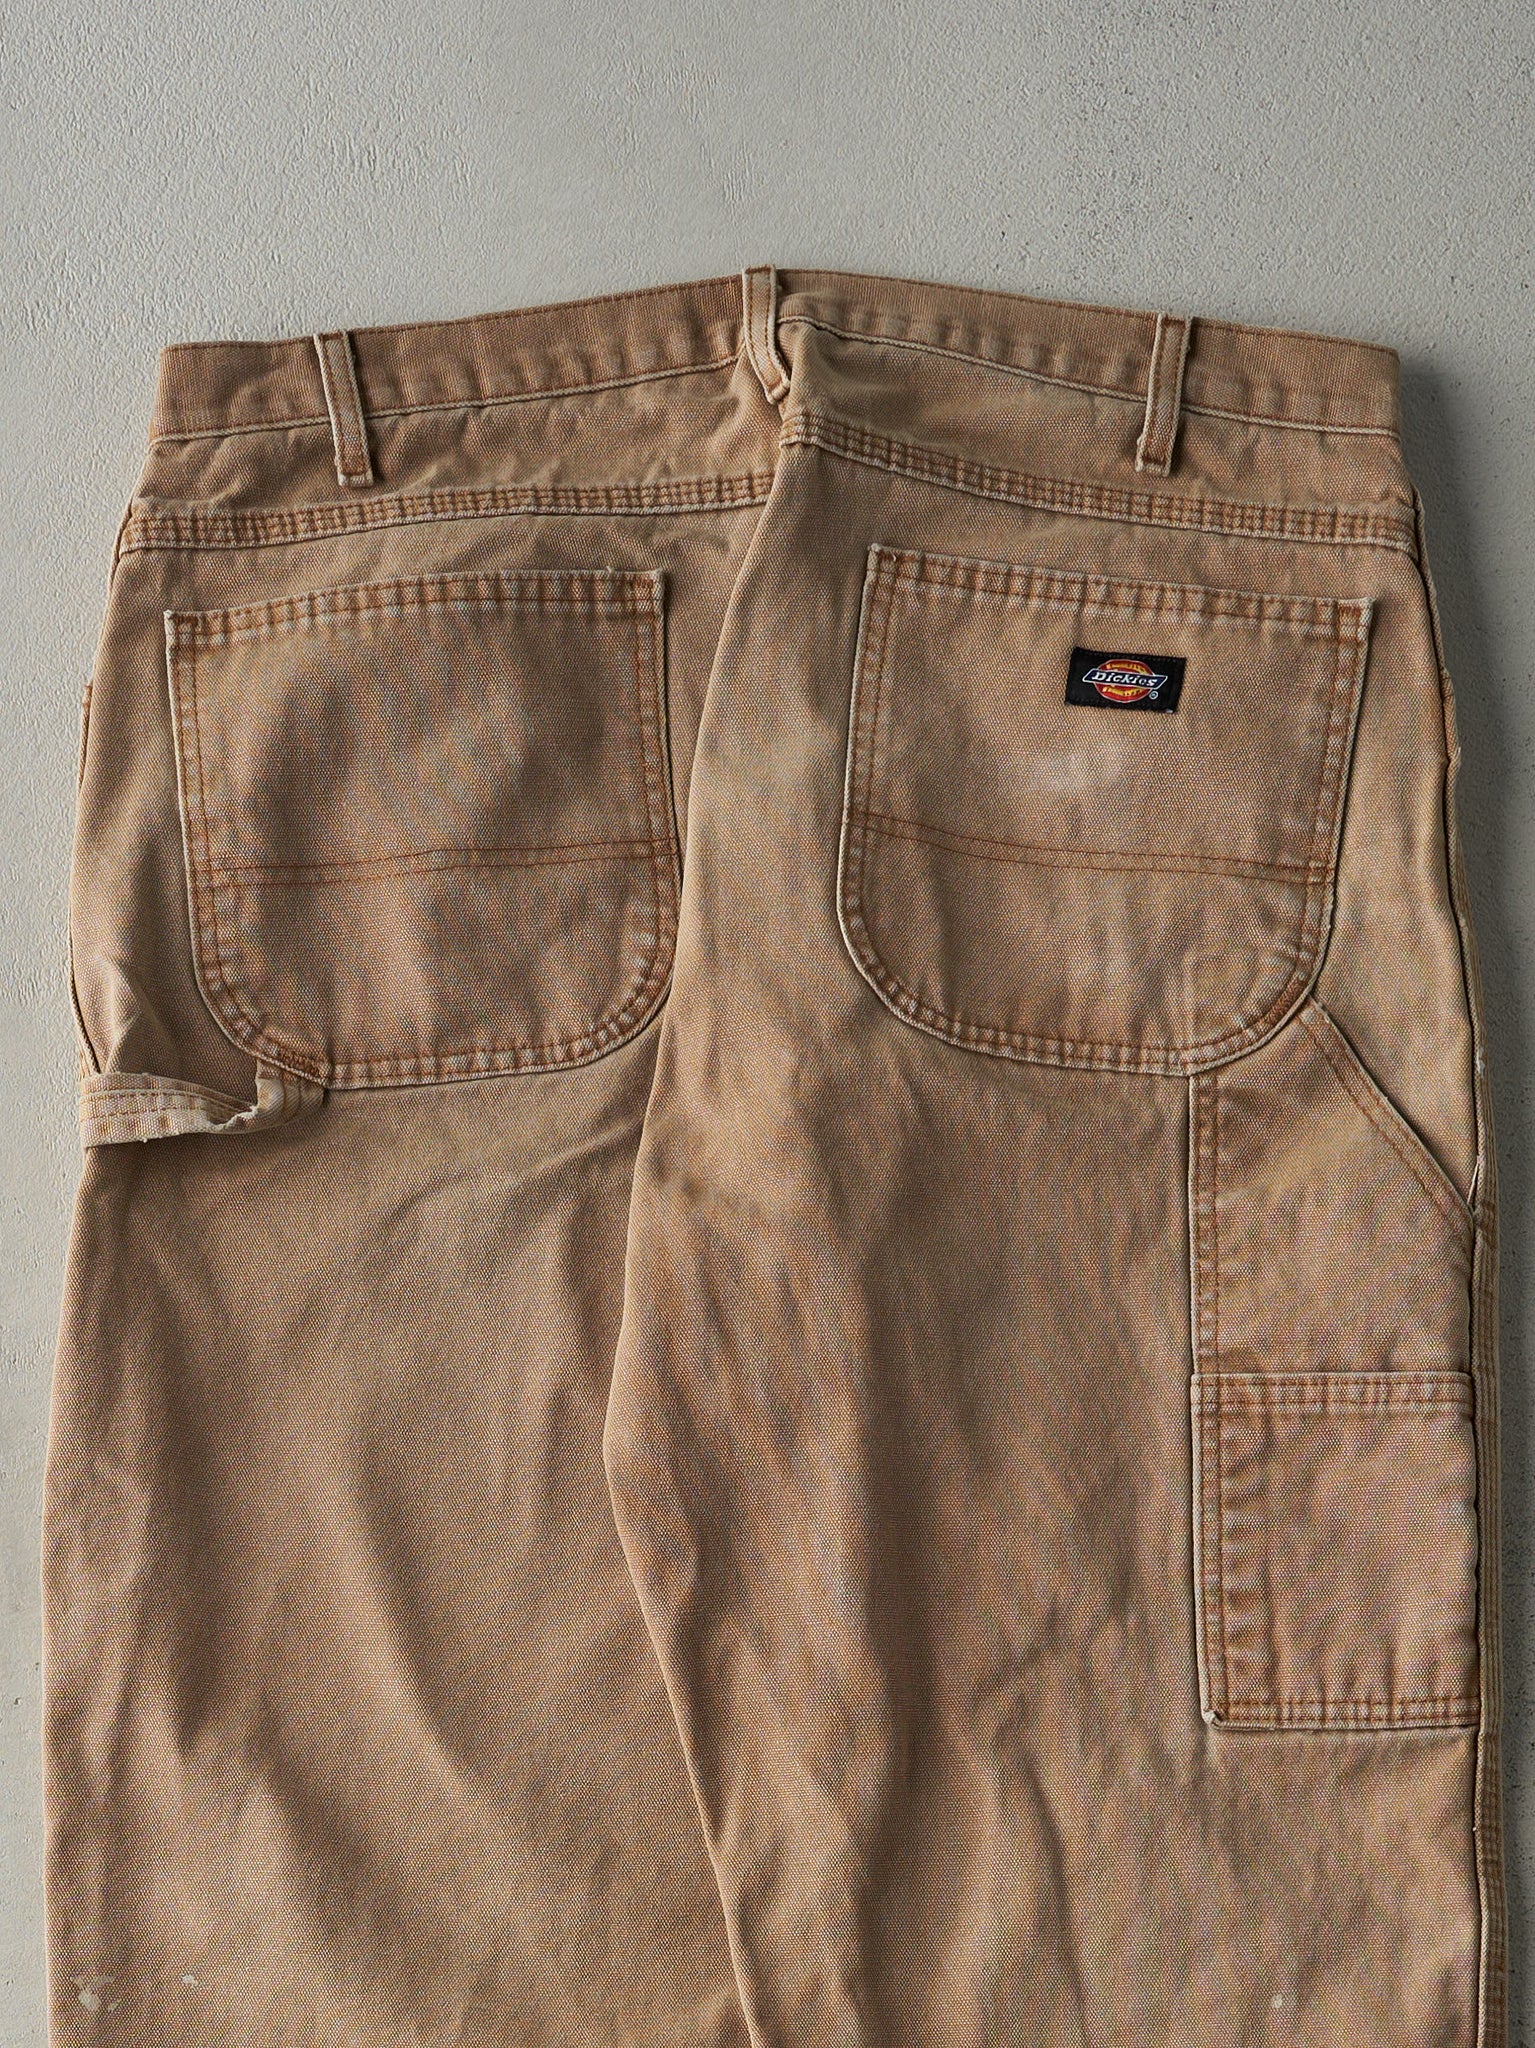 Vintage 90s Beige Dickies Carpenter Pants (35x32.5)